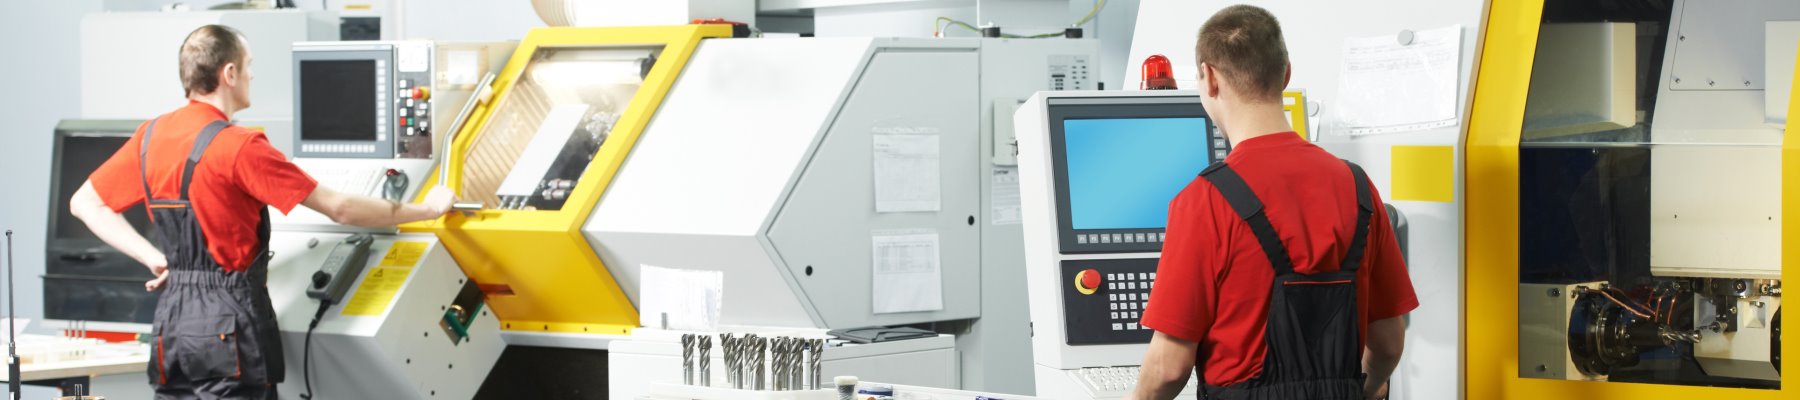 AB Zerspanungstechnik: Moderner Maschinenpark für die CNC Drehbearbeitung und CNC Fräsbearbeitung.